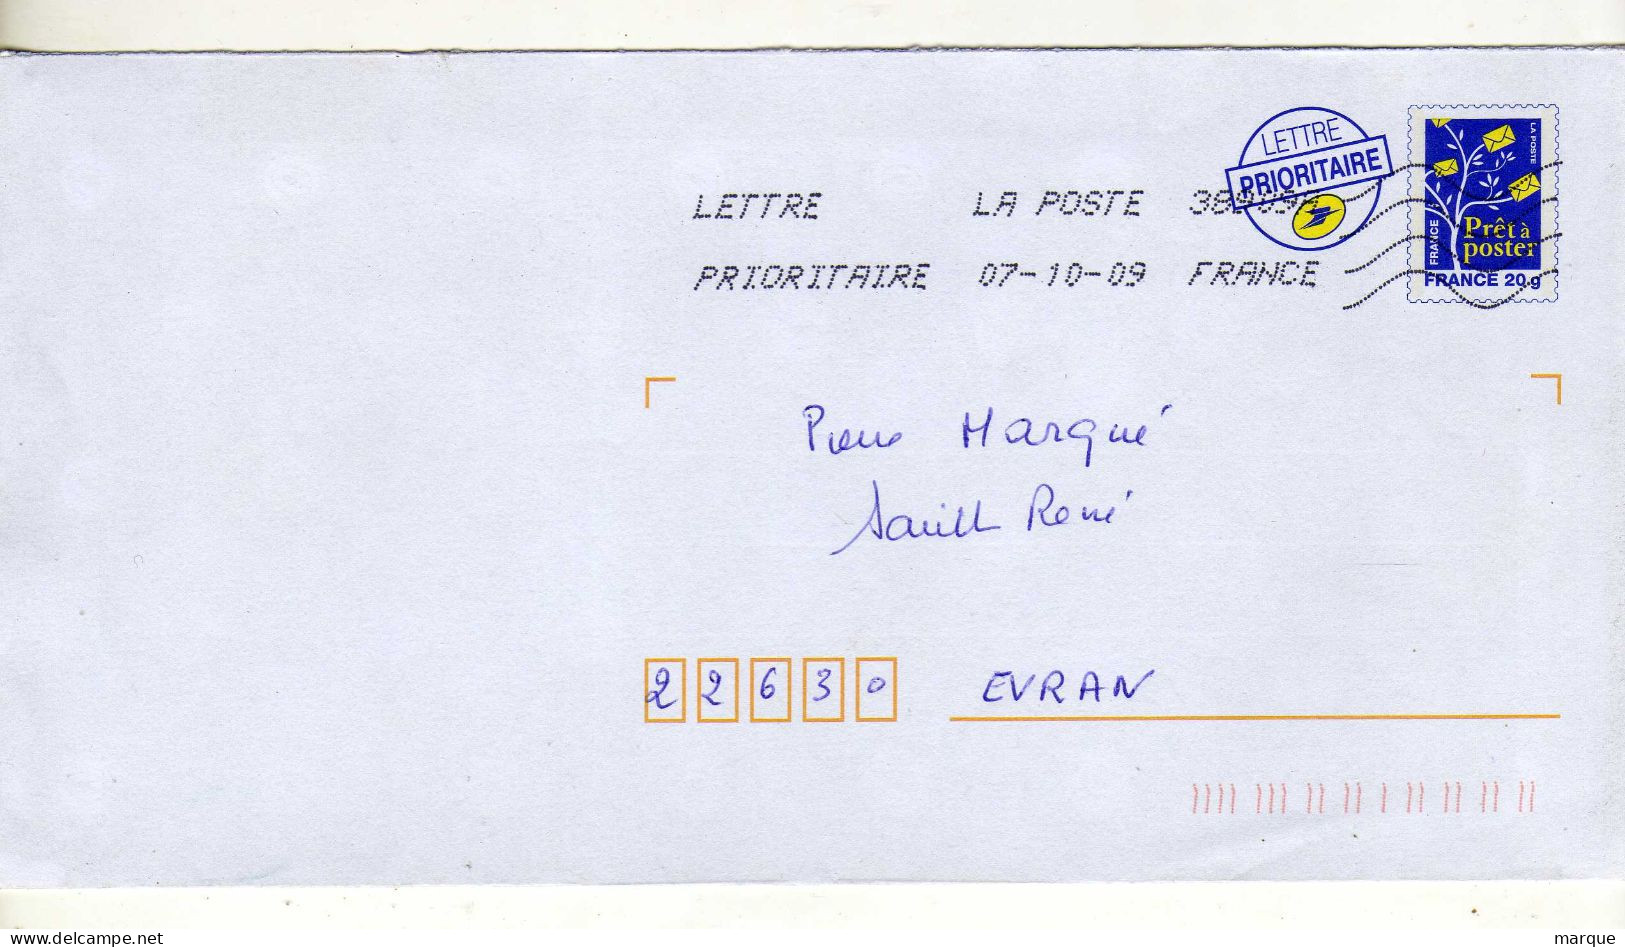 Enveloppe FRANCE Prêt à Poster Lettre Prioritaire Oblitération LA POSTE 38989A 07/10/2009 - Prêts-à-poster:Overprinting/Blue Logo